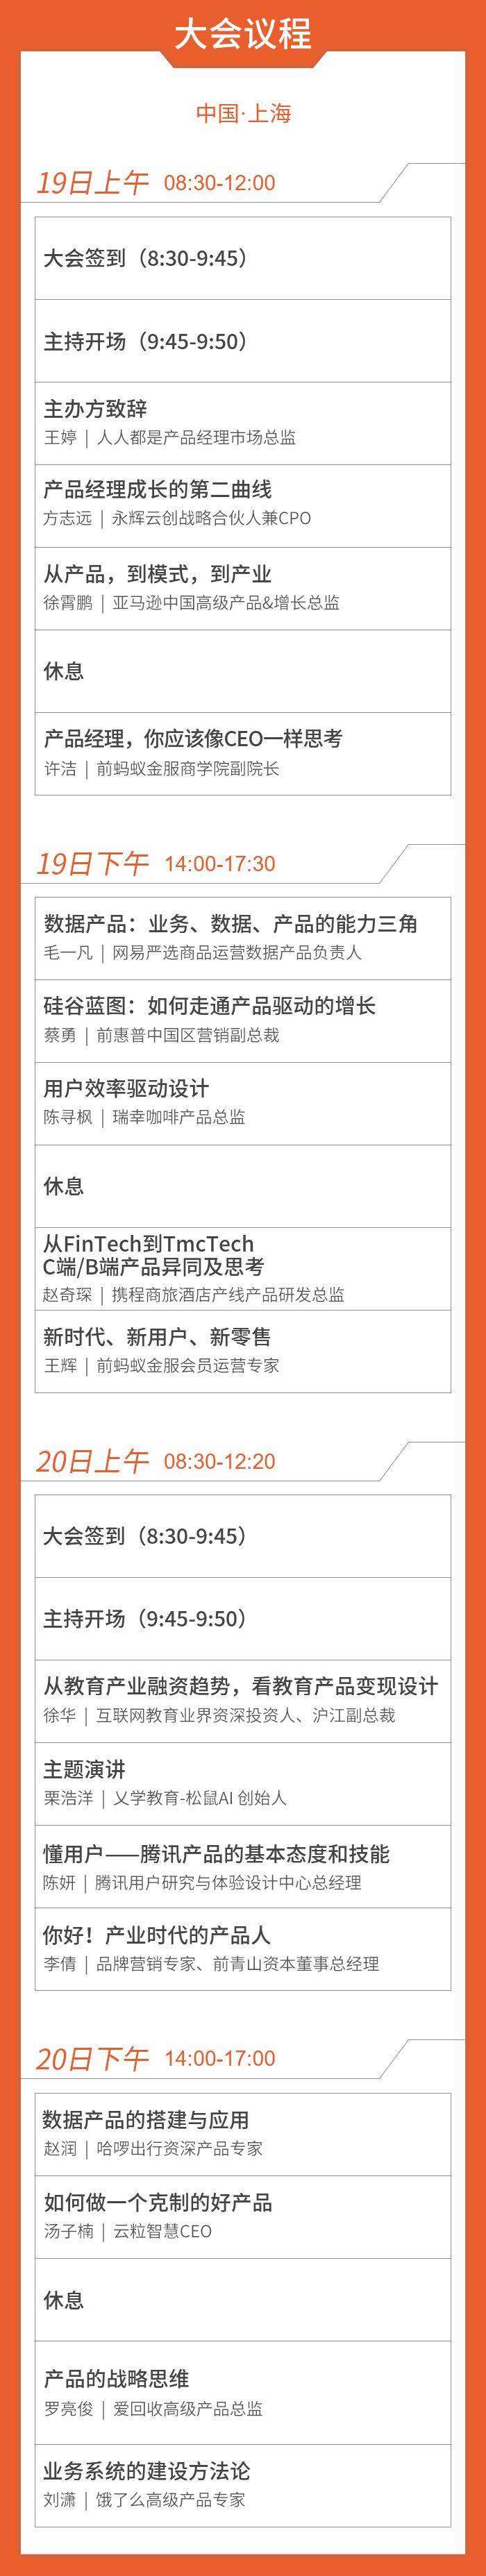 上海大会议程图1018更新无码.jpg